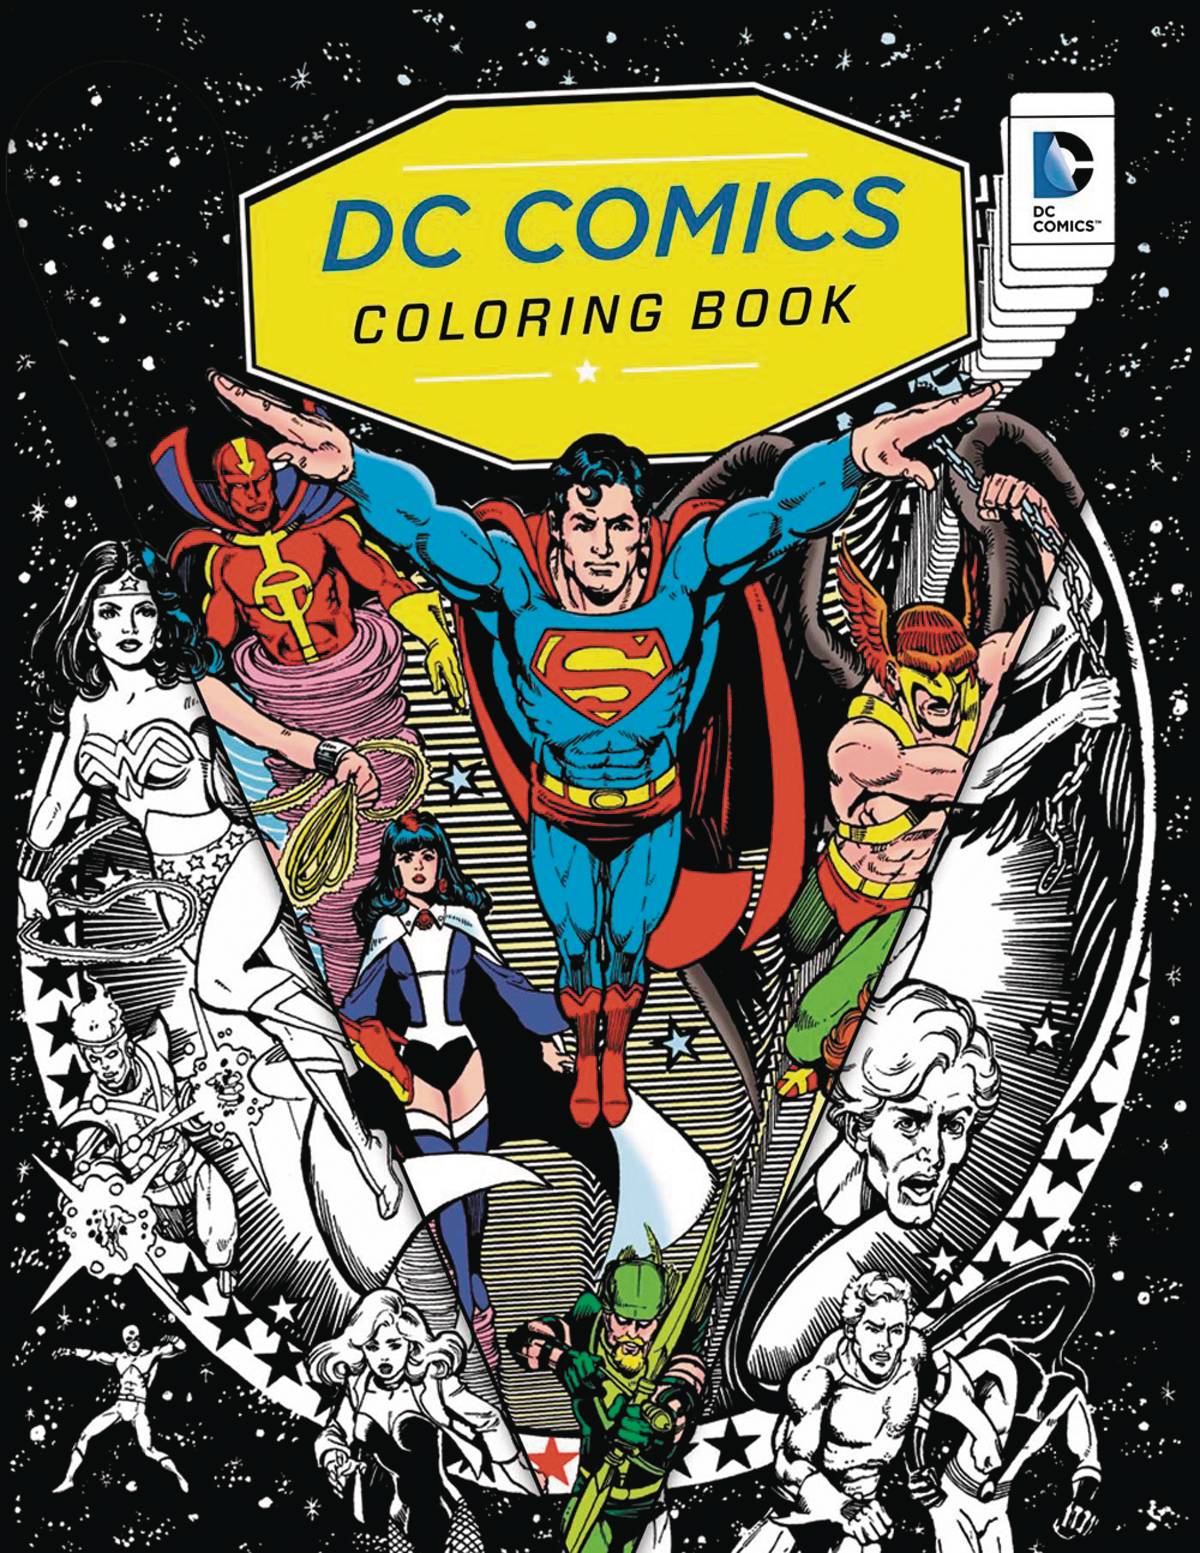 DC Comics Coloring Book Soft Cover